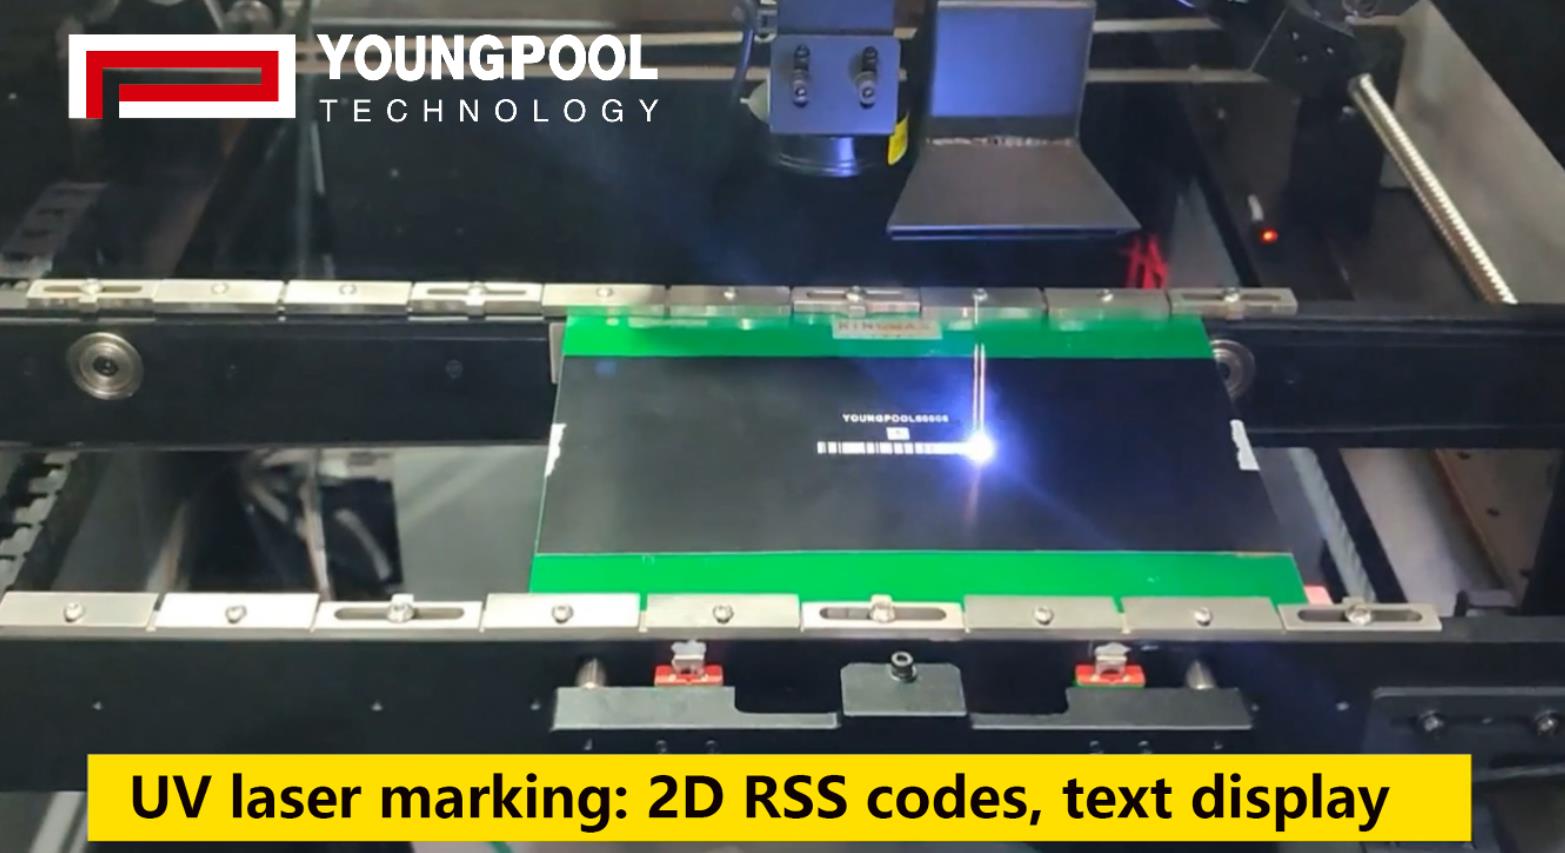 Một thương hiệu sản xuất điện thoại di động mua 10 bộ máy khắc laser công nghệ youngpool
